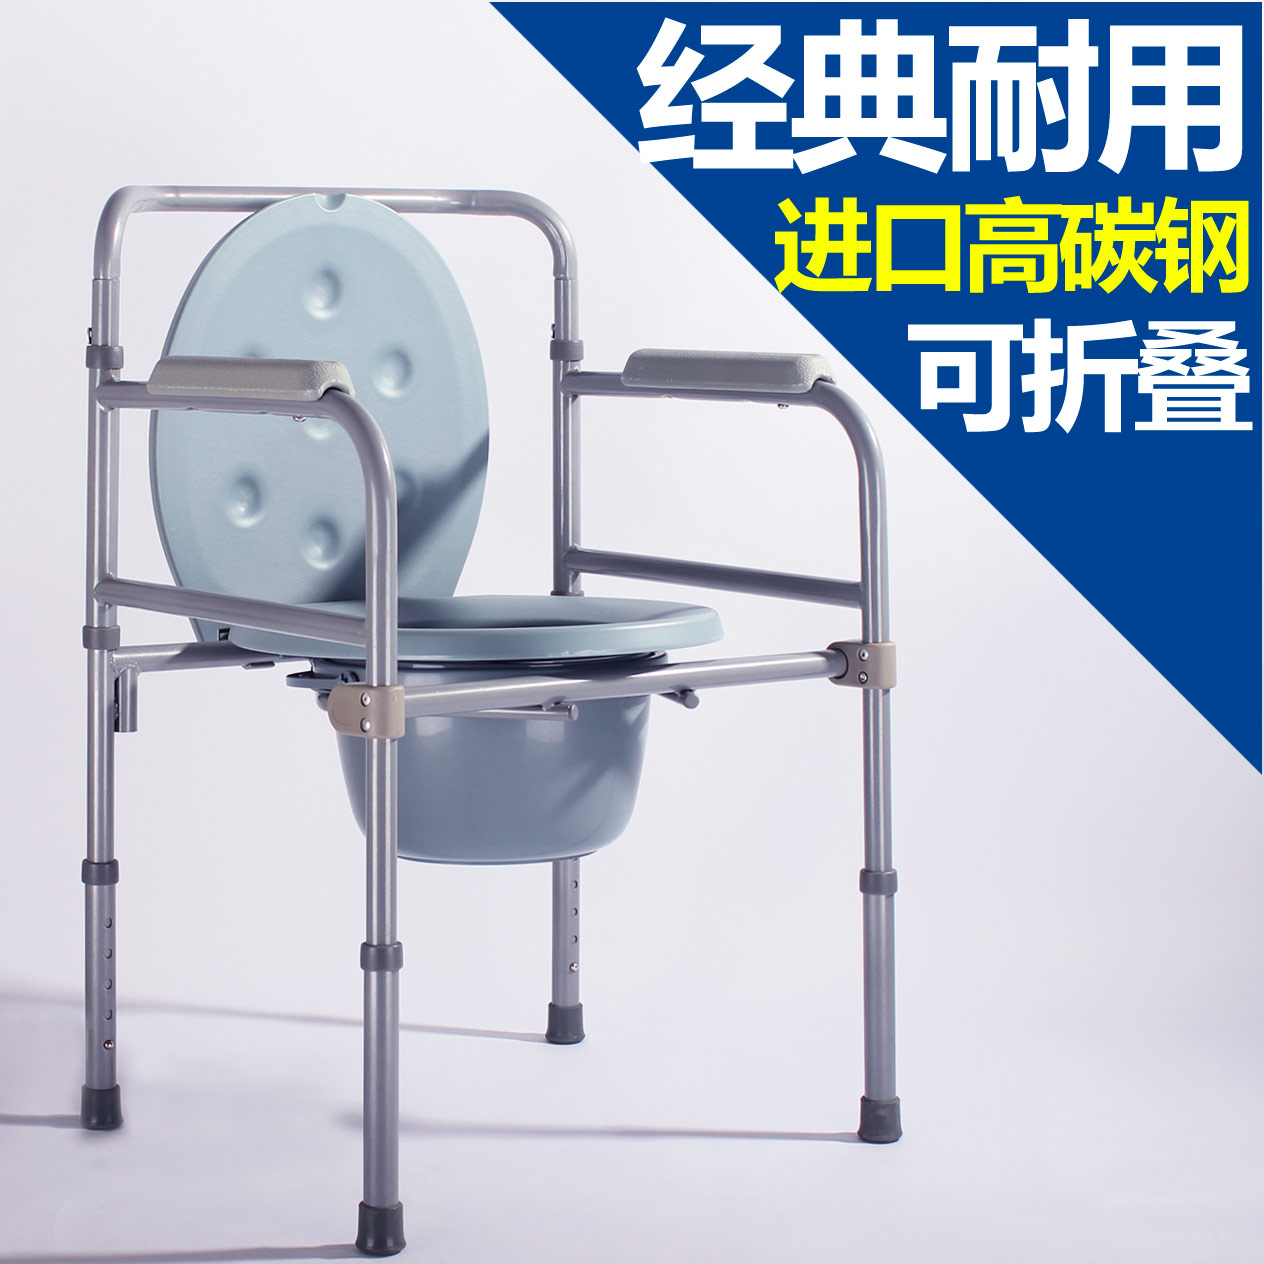 老人实用坐便椅孕妇/残疾人老年可折叠坐厕椅/座便椅便盆移动马桶